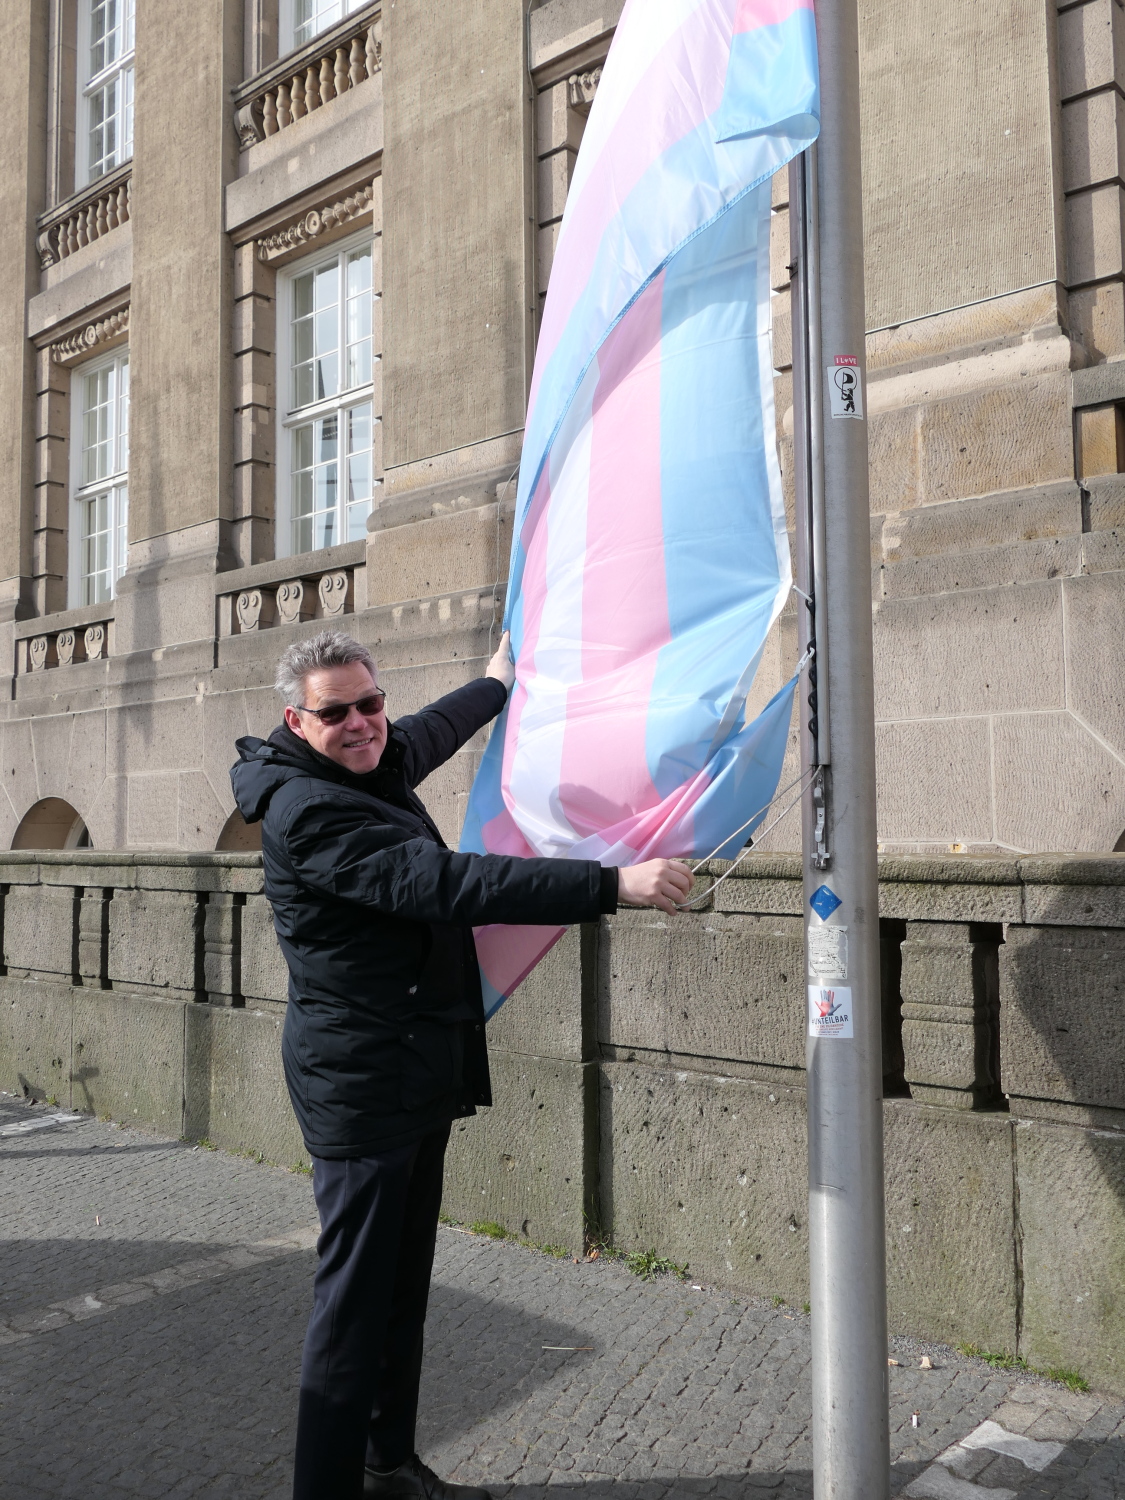 Ein Mann steht neben einem Fahnenmast und hält eine an diesem hängenden blau-rosa-weiß-gestreifte Flagge in den Händen.